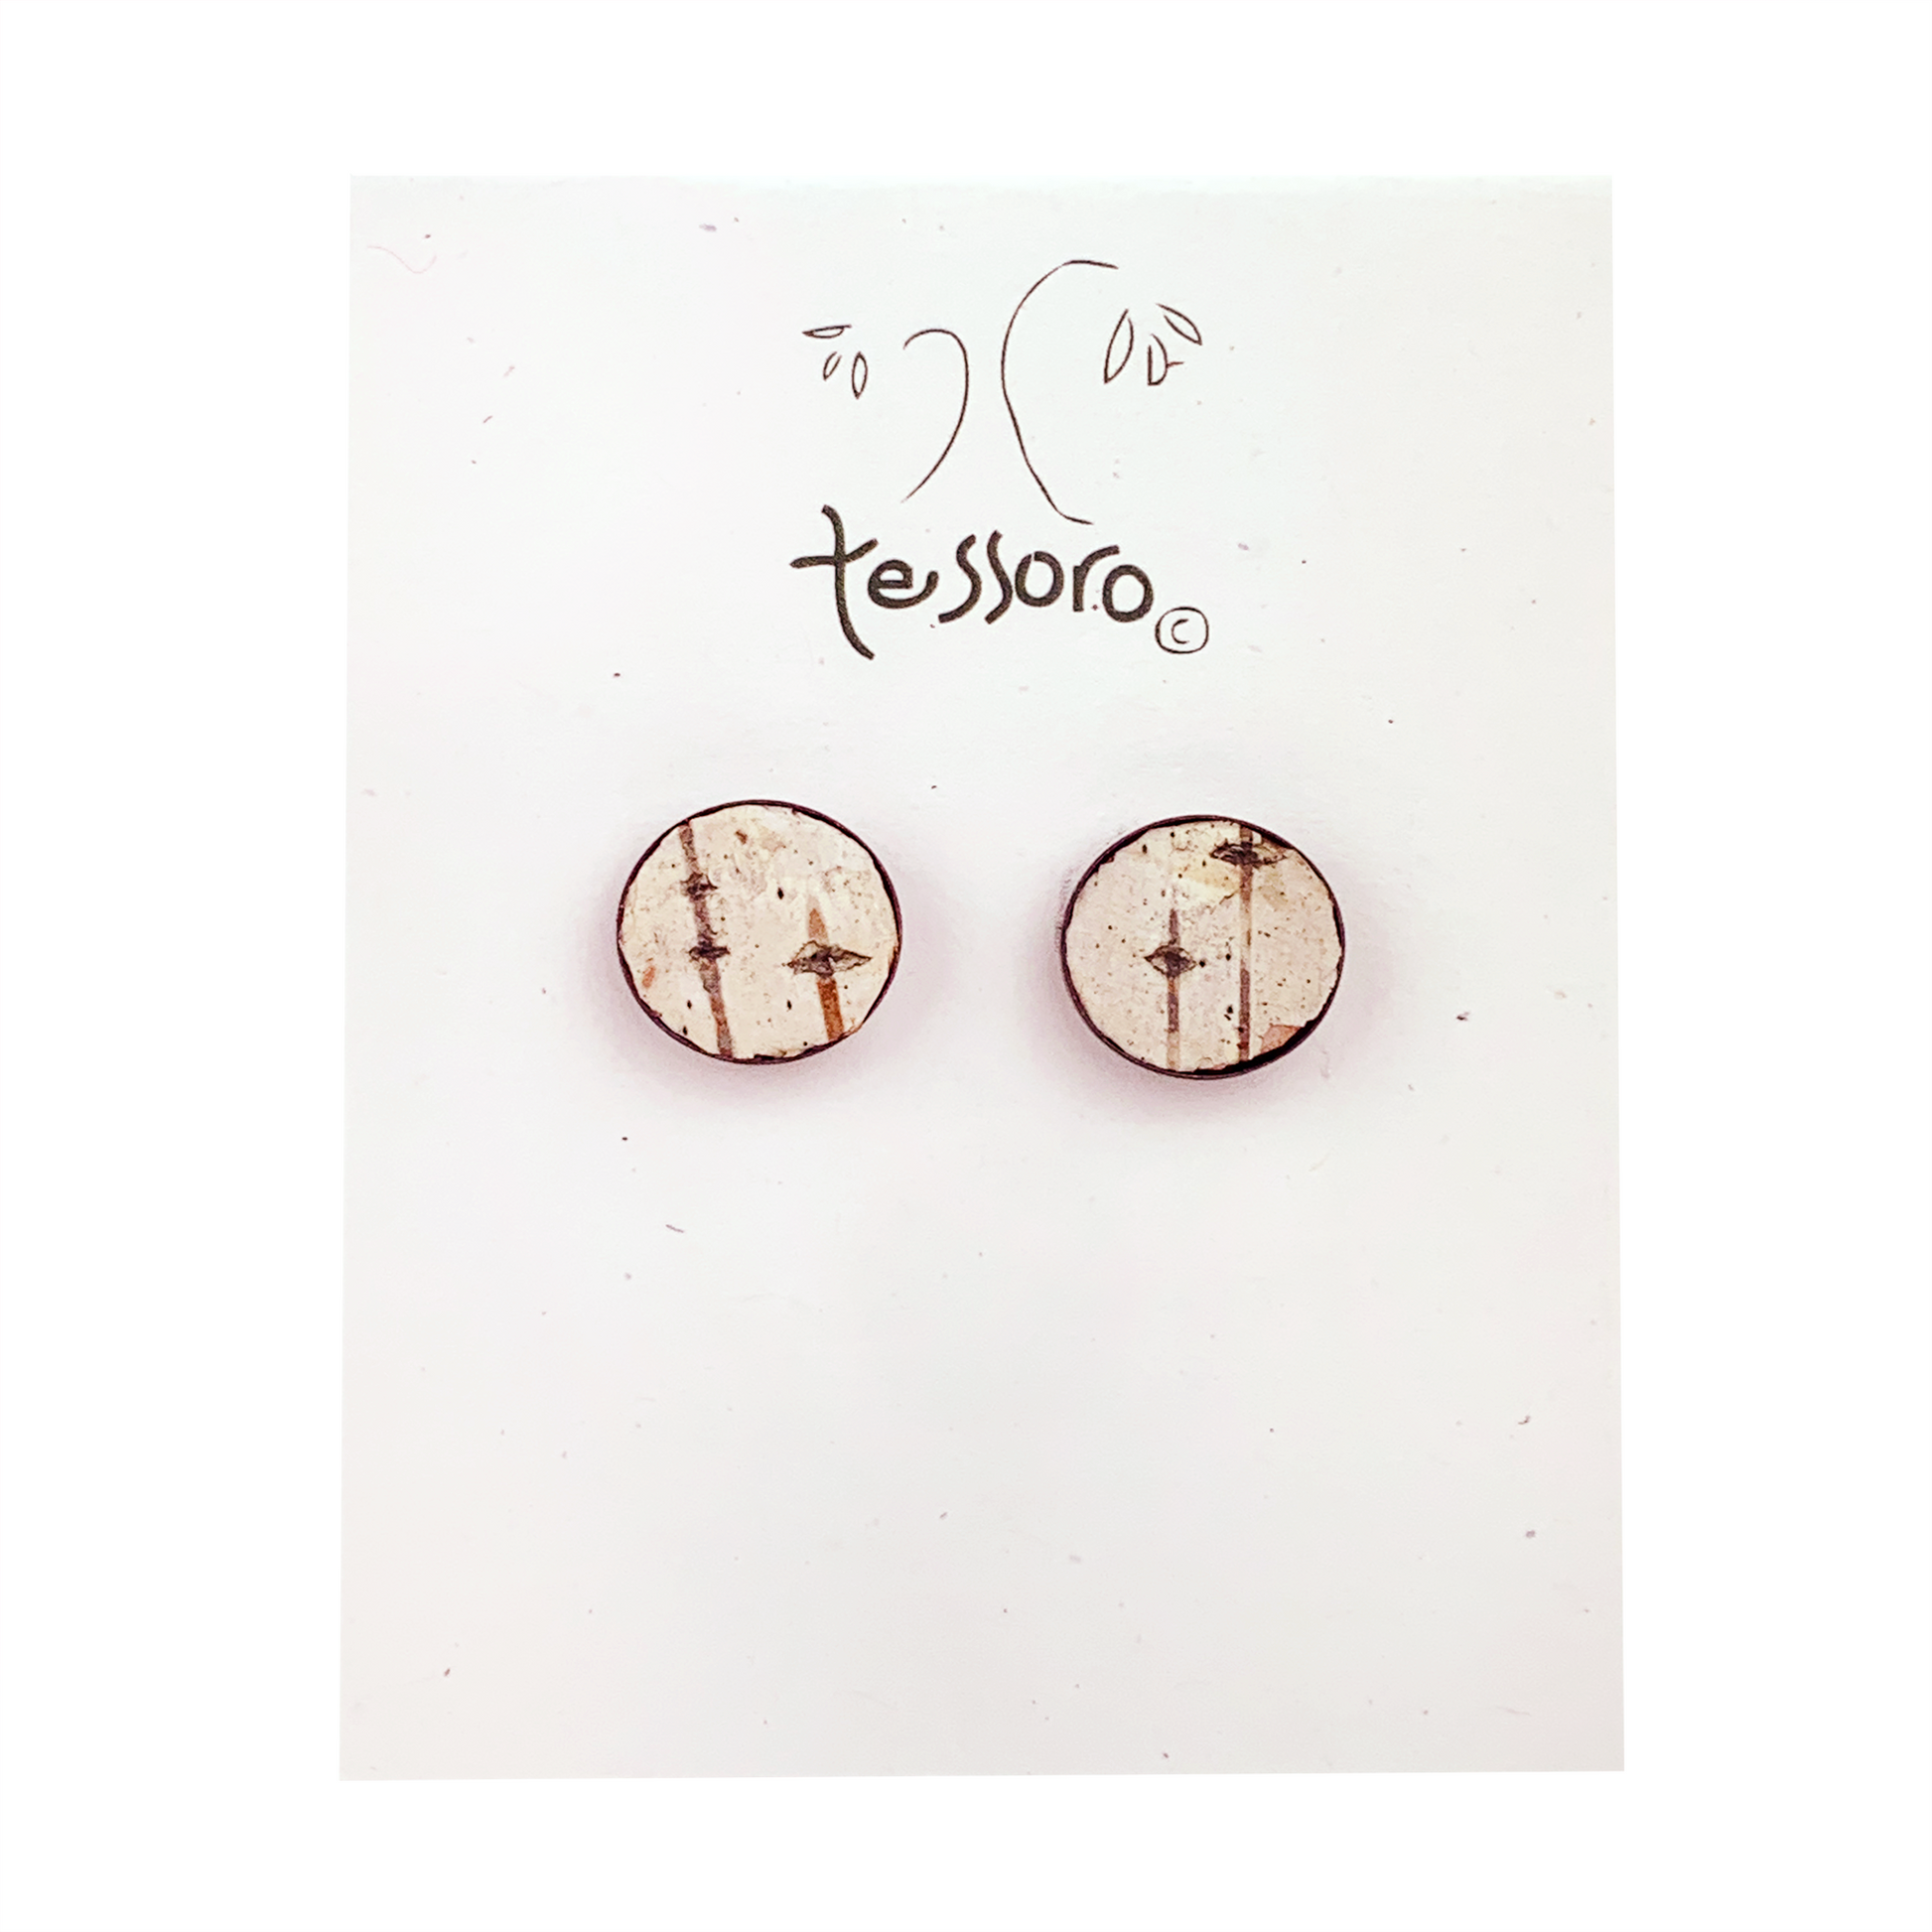 Tessoro Birch Bark Oxidized Silver Post Earrings